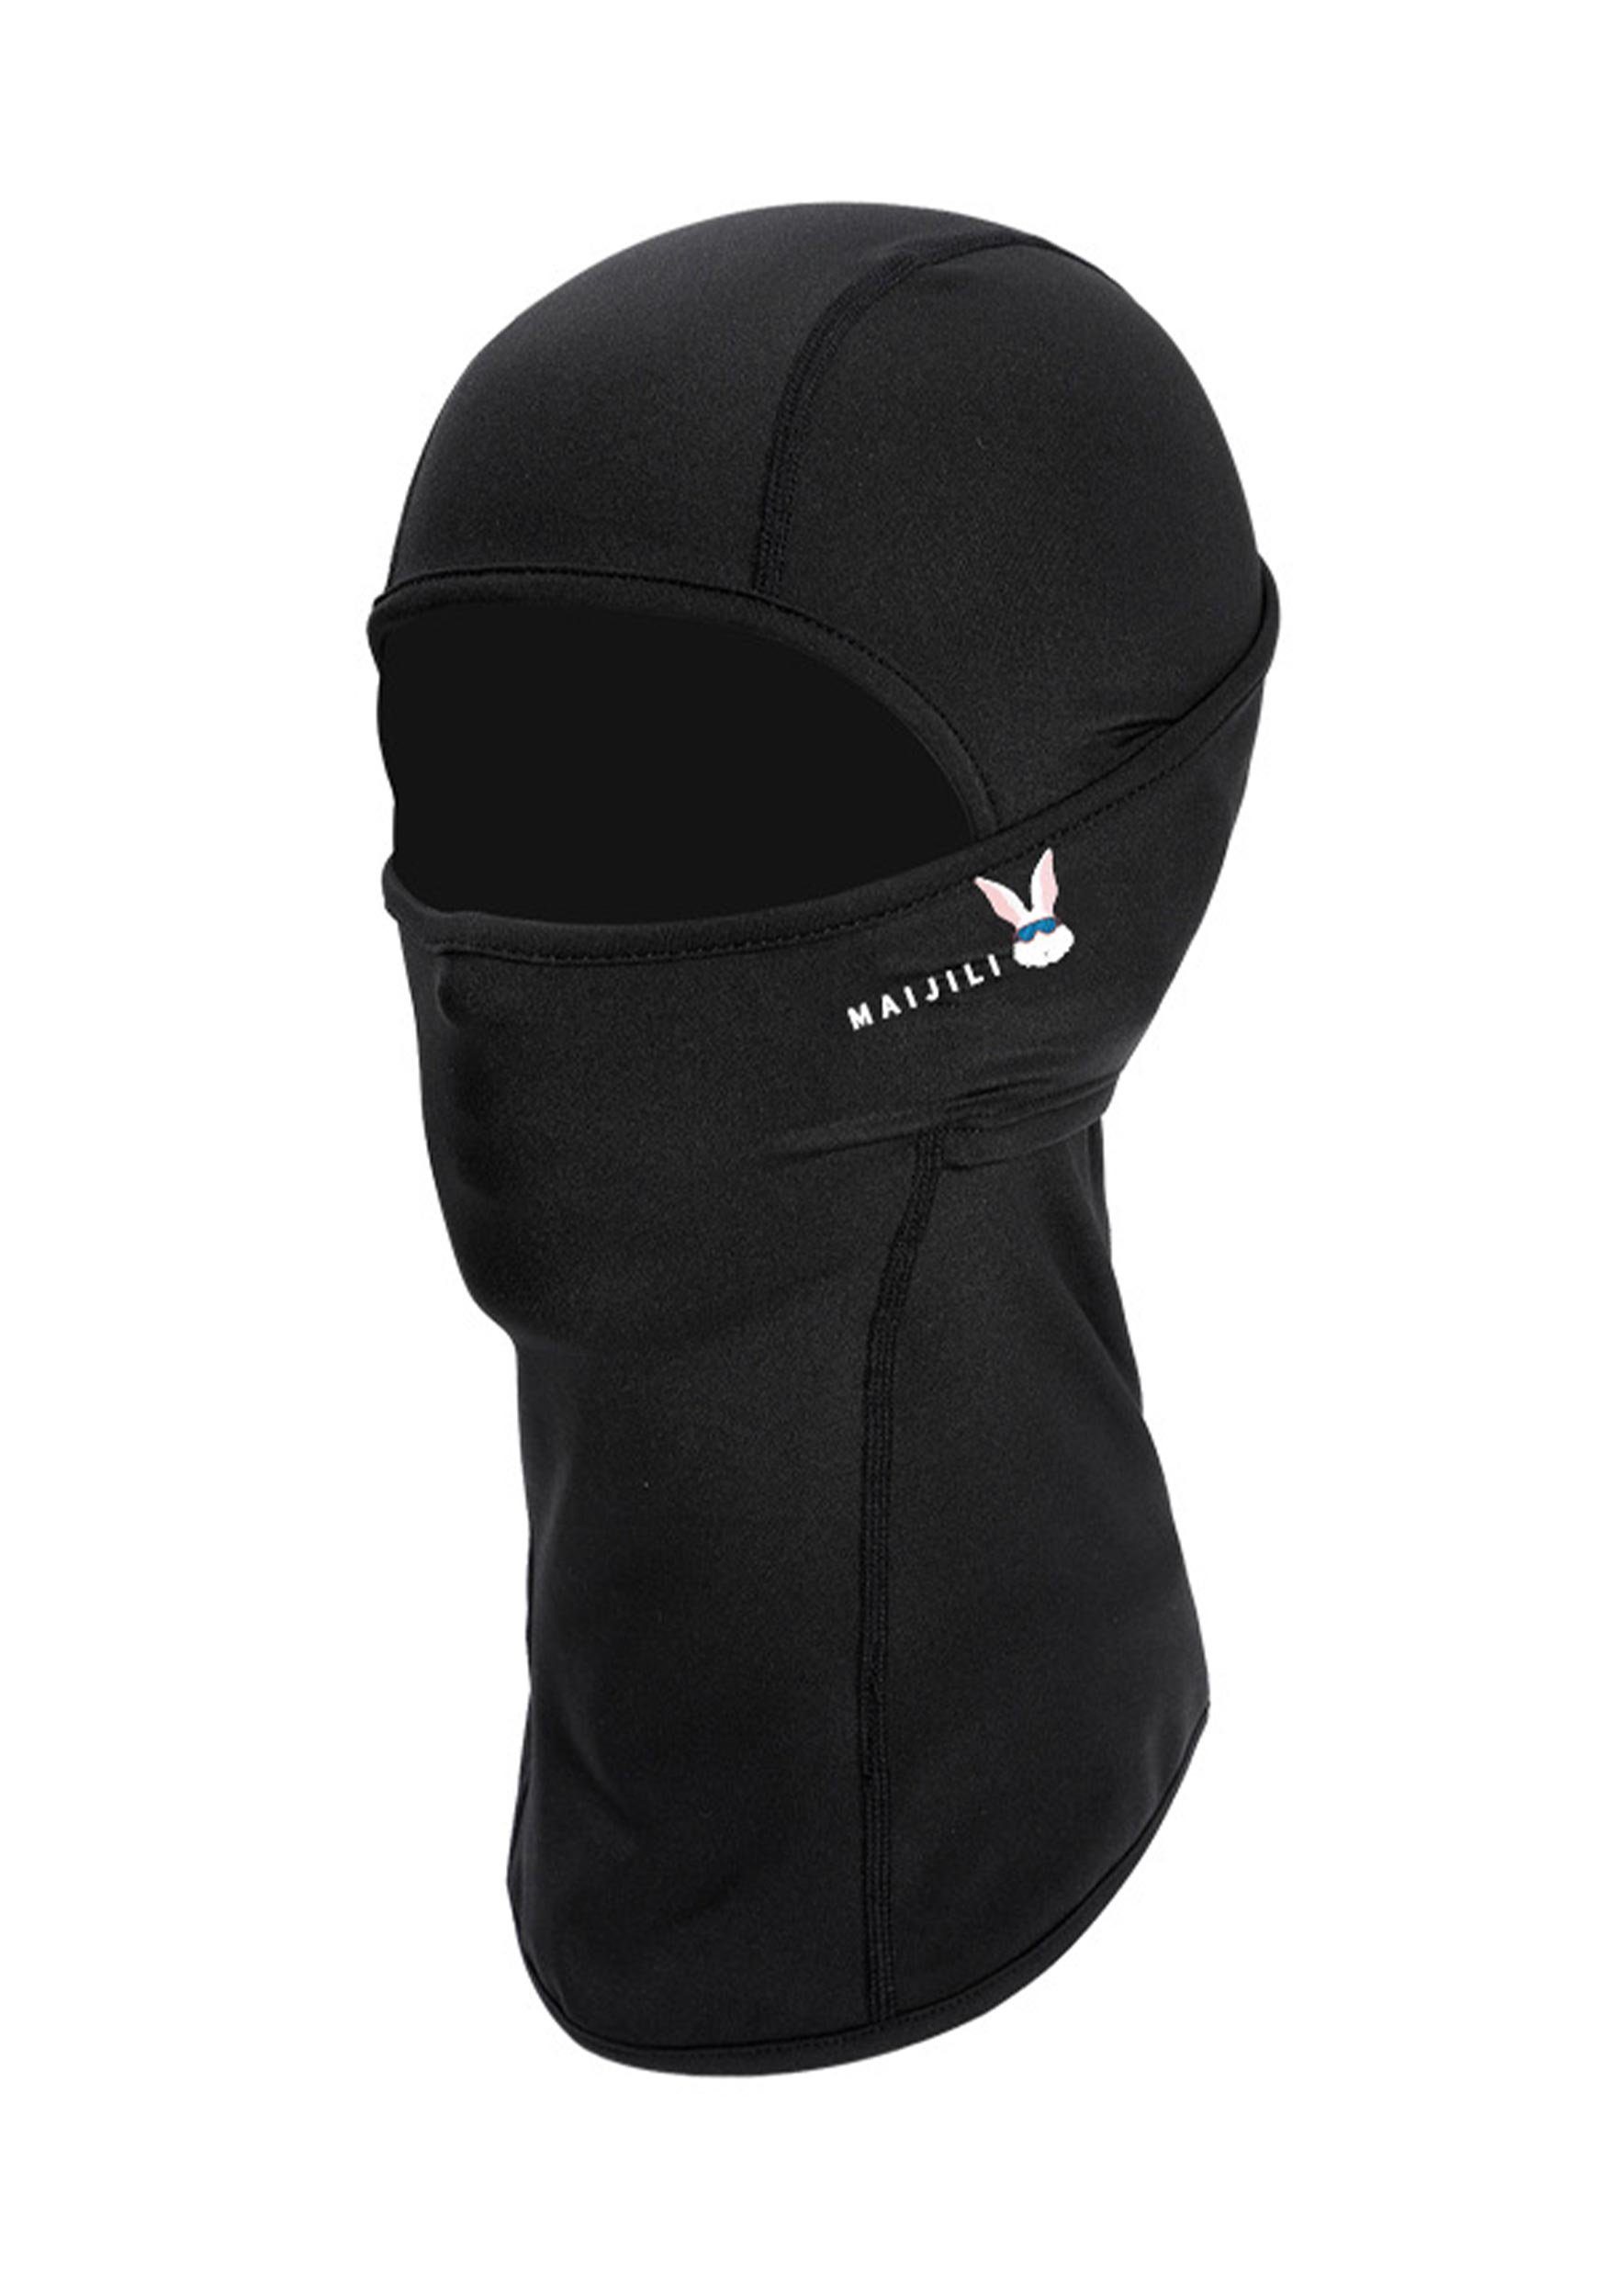 UV-Strahlen Skimaske Schwarz Sturmhaube MAGICSHE Umfassenden Widersteht Schutz für